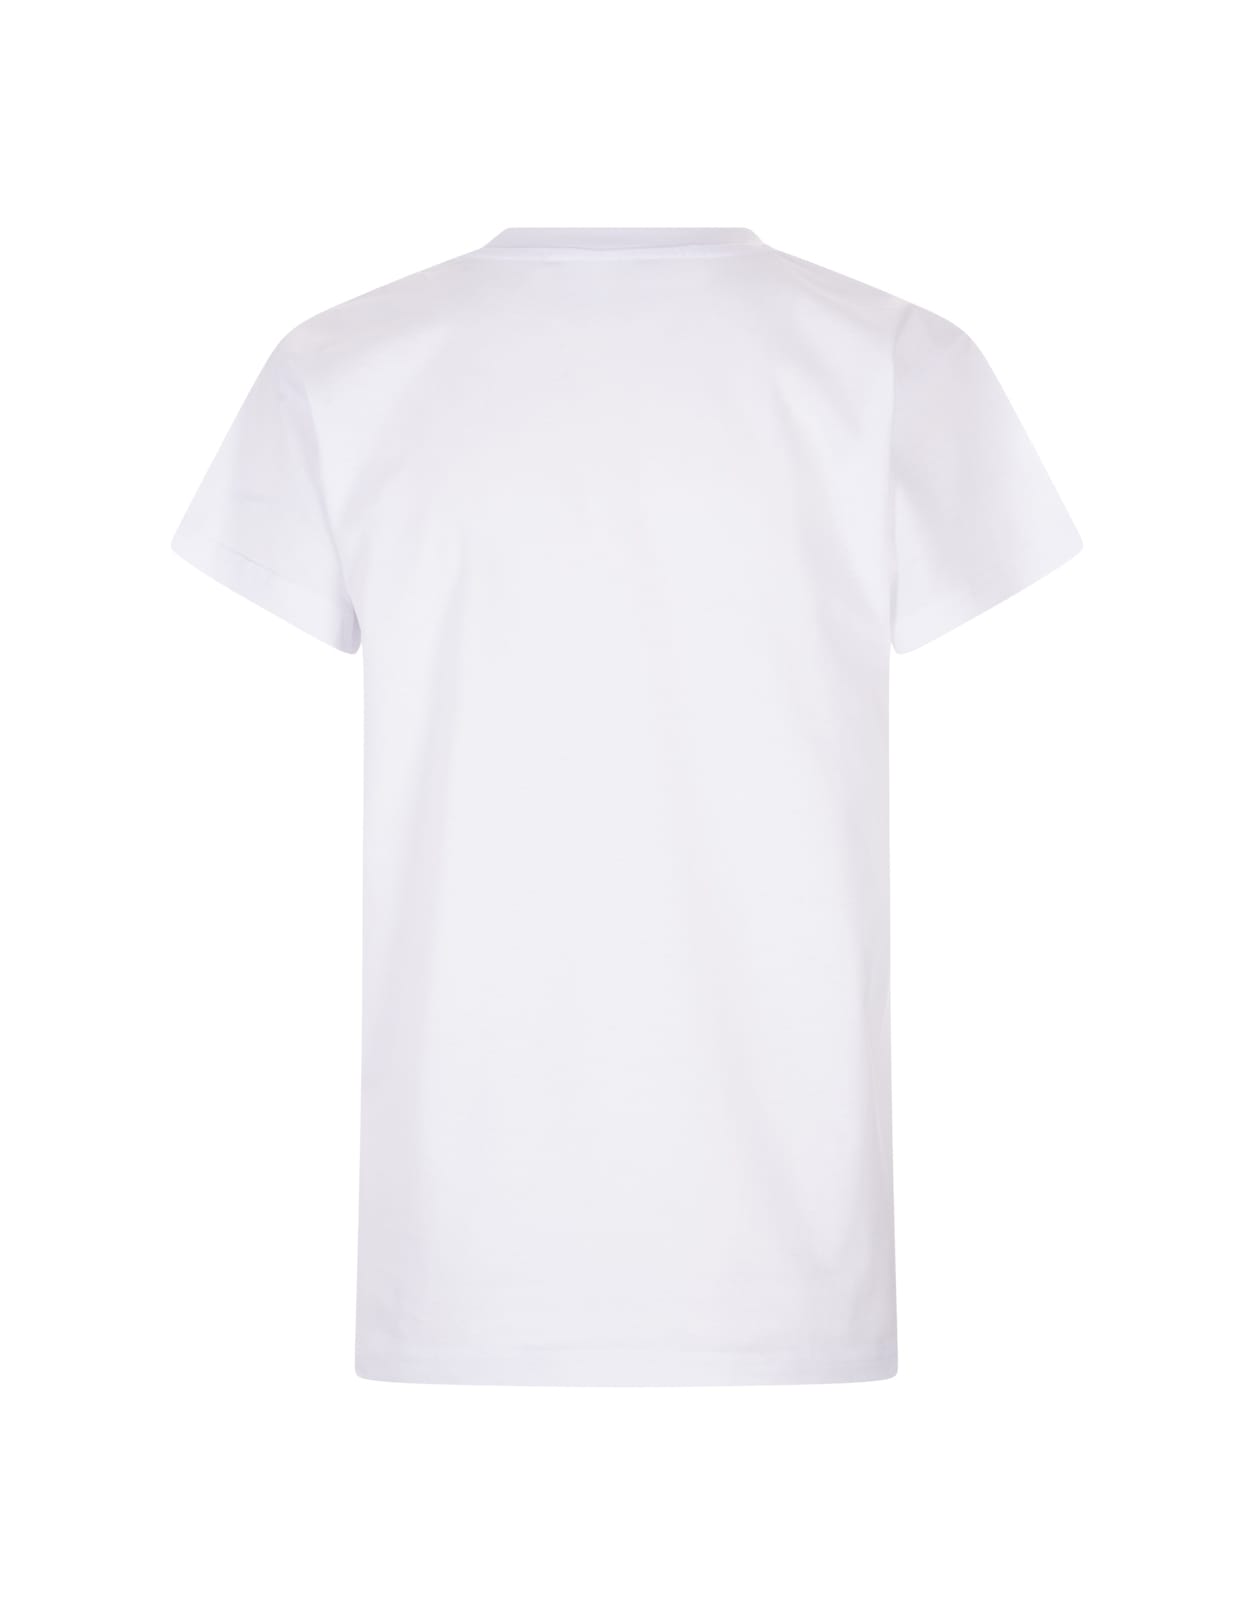 Shop Alessandro Enriquez White T-shirt With Amore Print